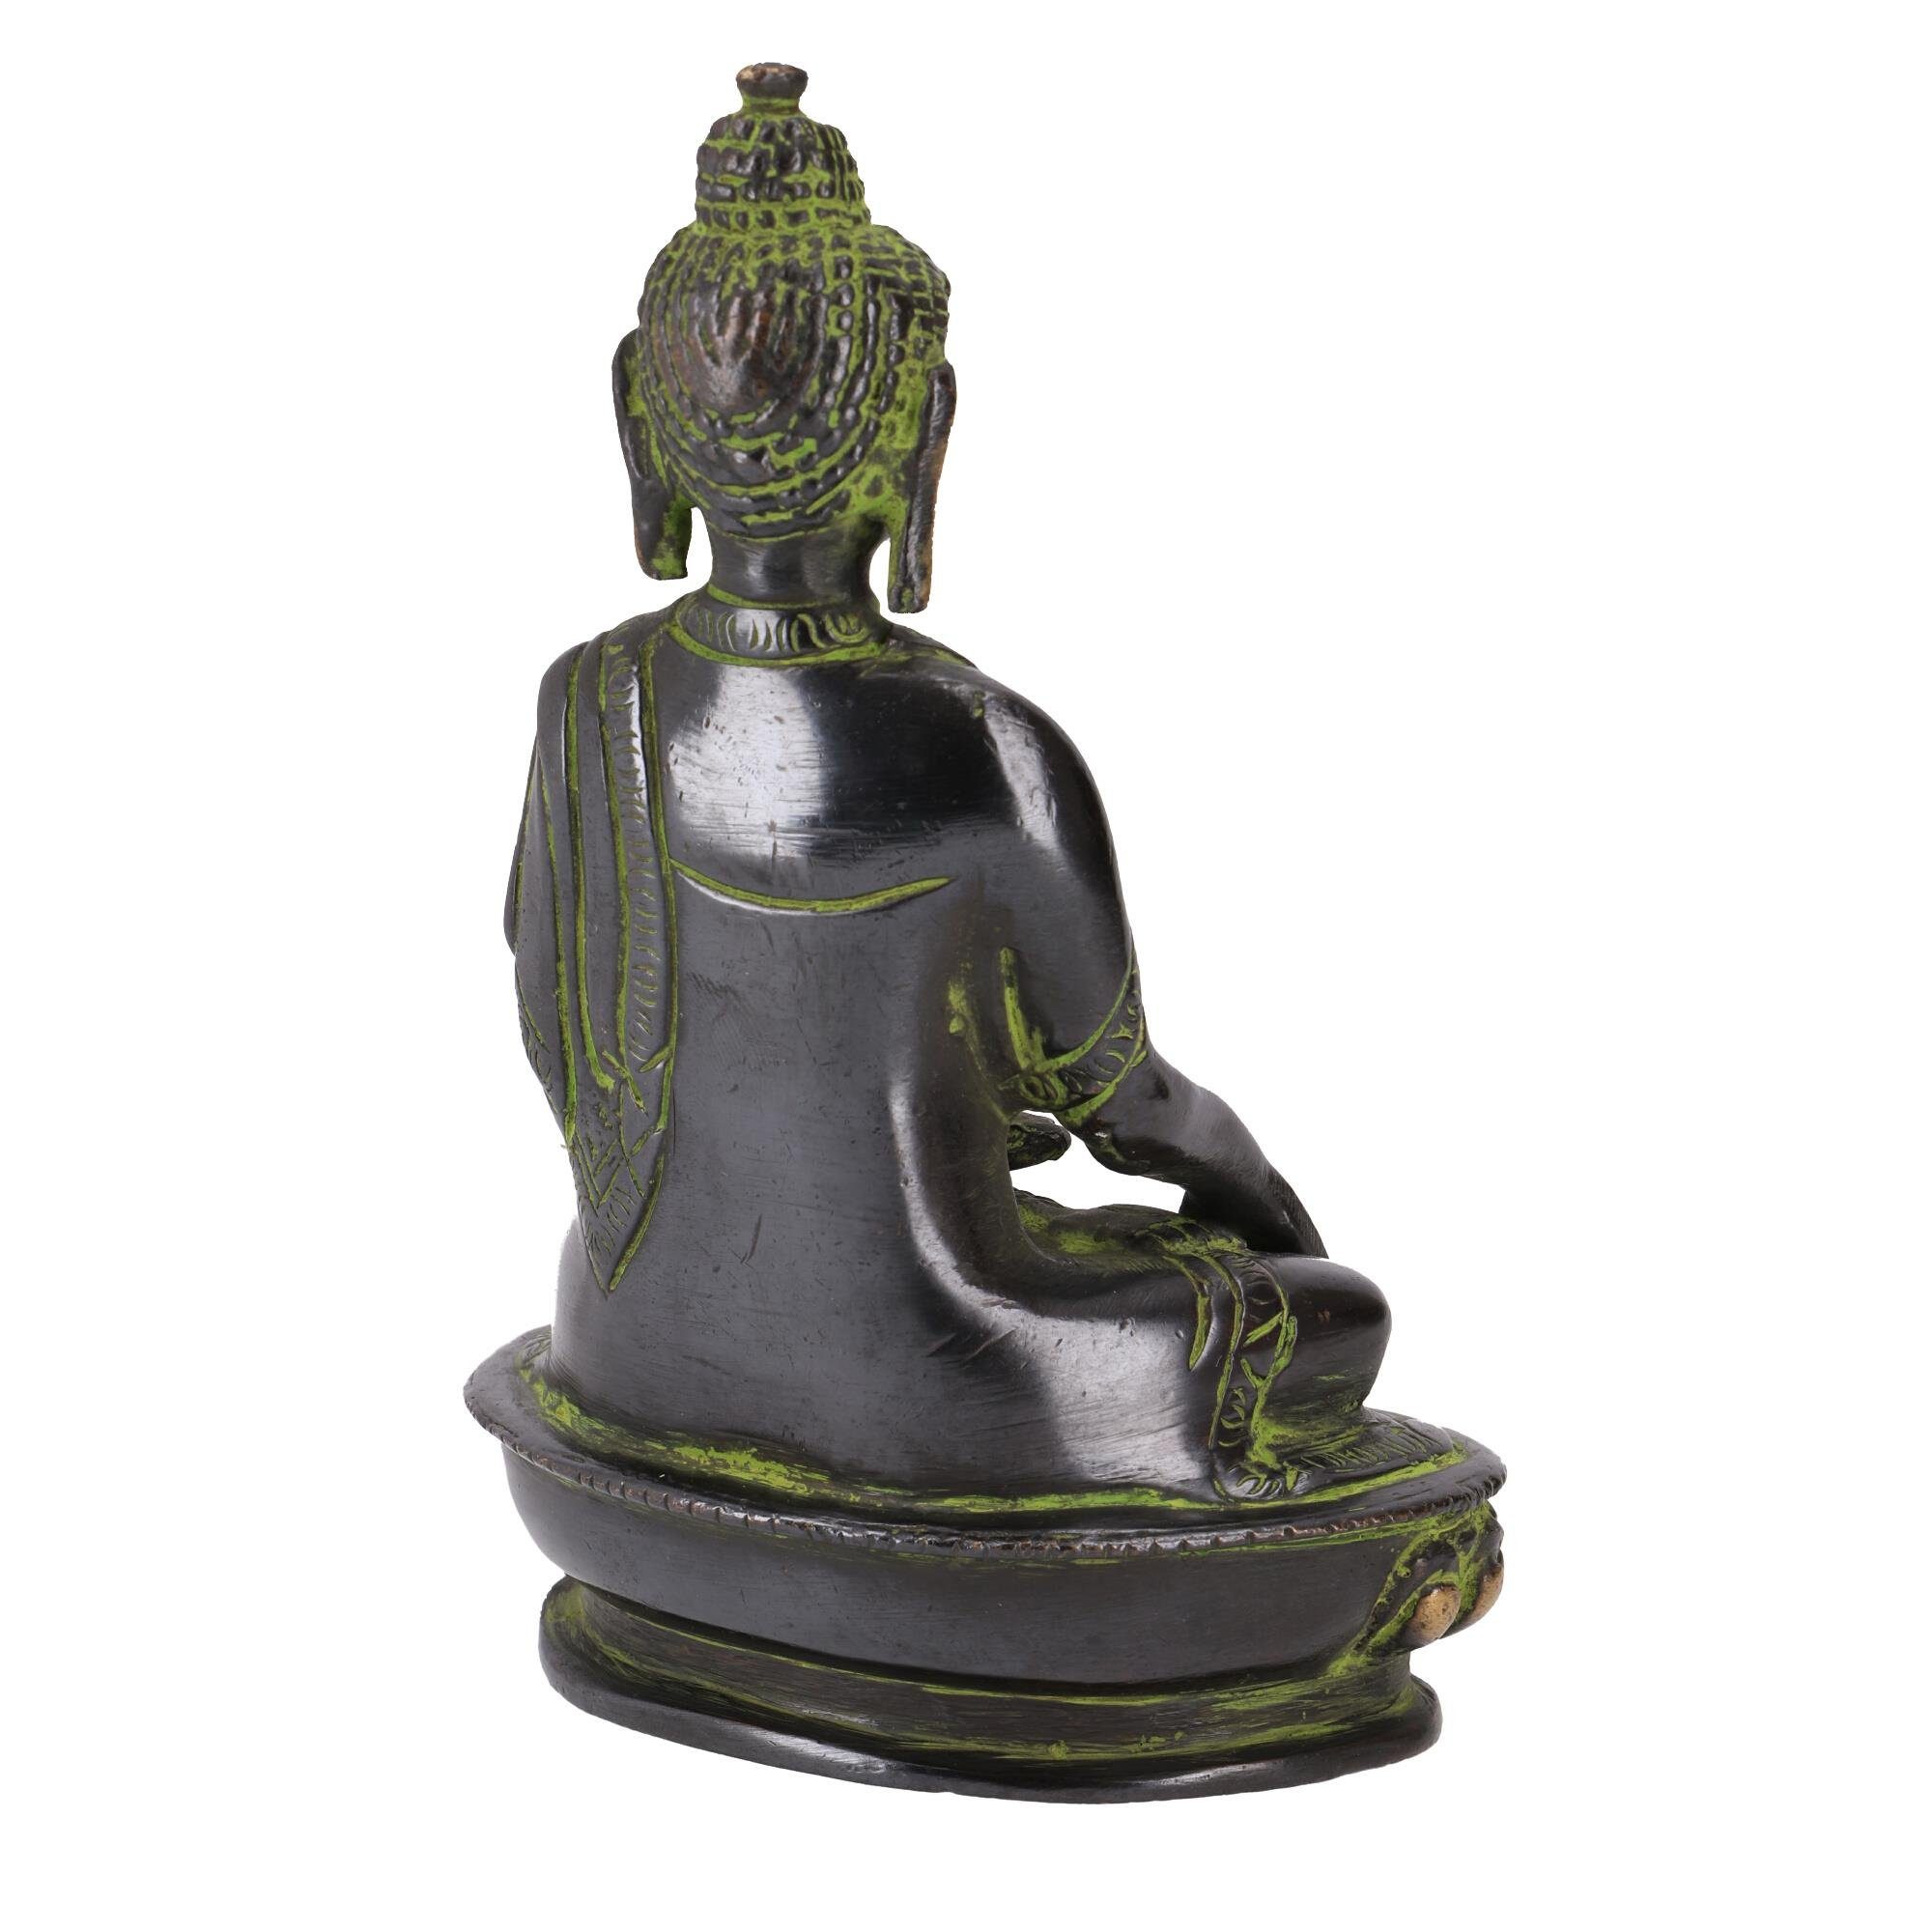 Statue Bhumisparsa Mudra 14.. aus Buddhafigur Guru-Shop Messing Buddha